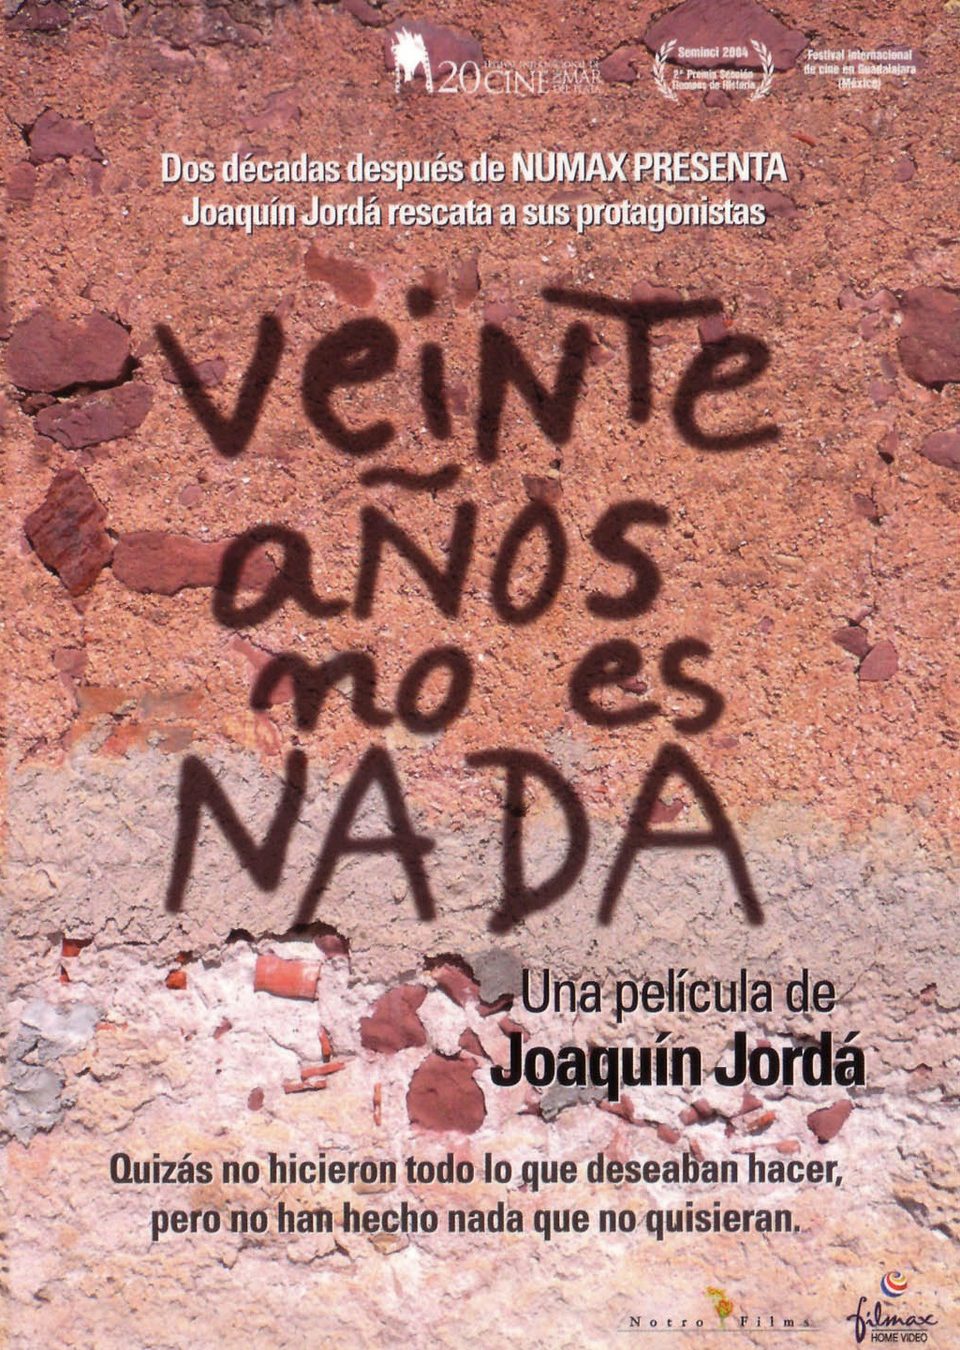 Poster of Veinte años no es nada - España